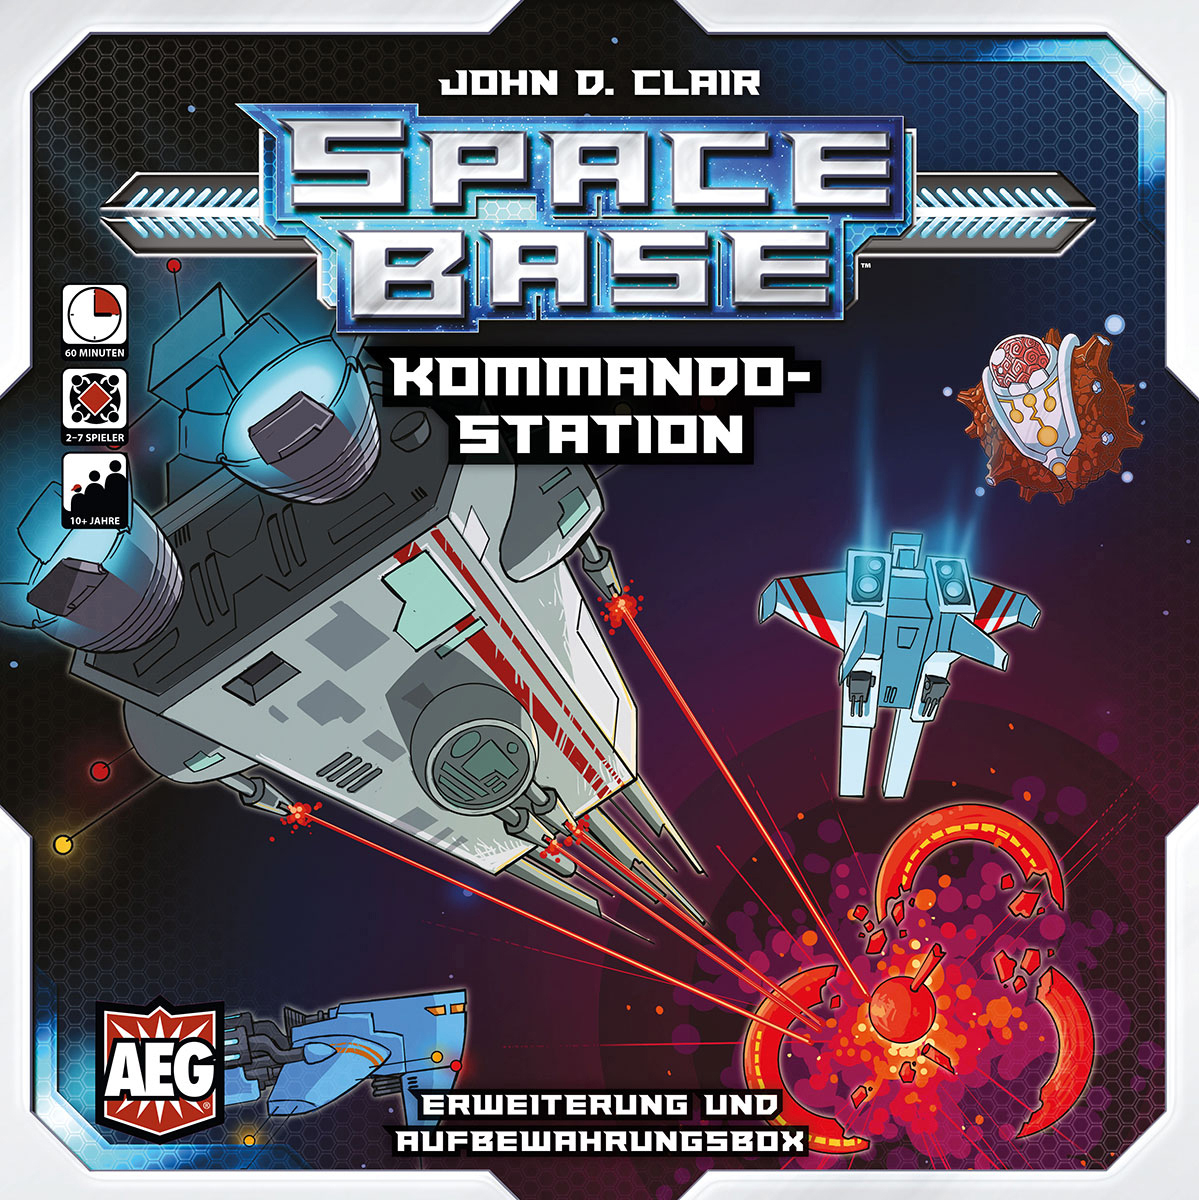 Base Space Gesellschaftsspiel ENTERTAINMENT Kommandostation GROUP - ALDERAC Mehrfarbig